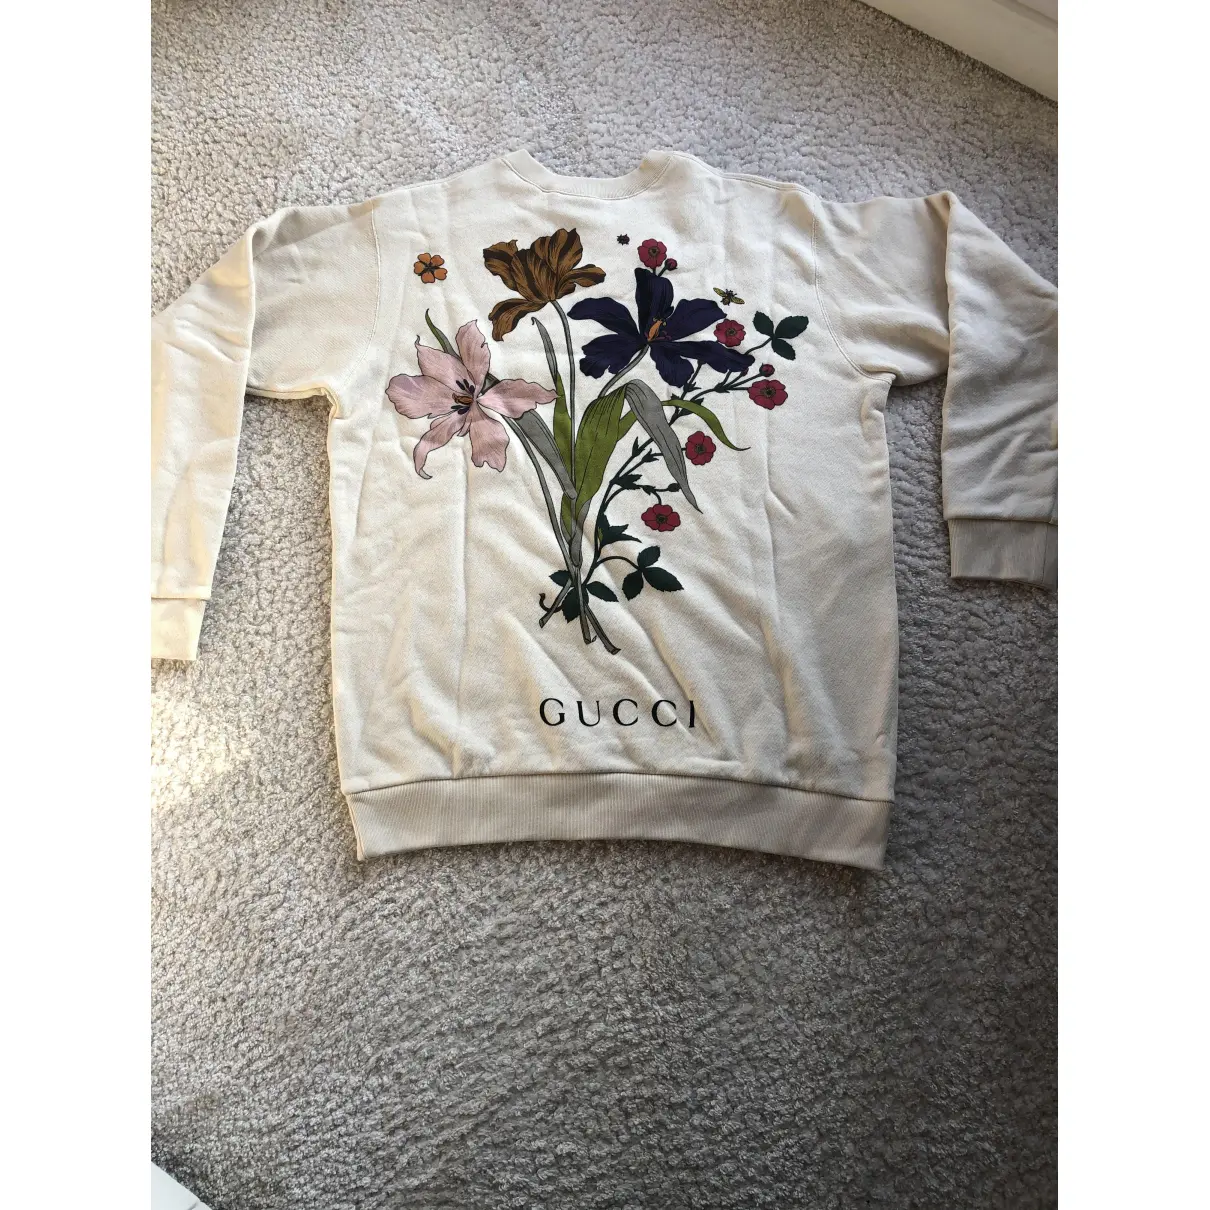 Buy Gucci Ecru Cotton Knitwear & Sweatshirt online